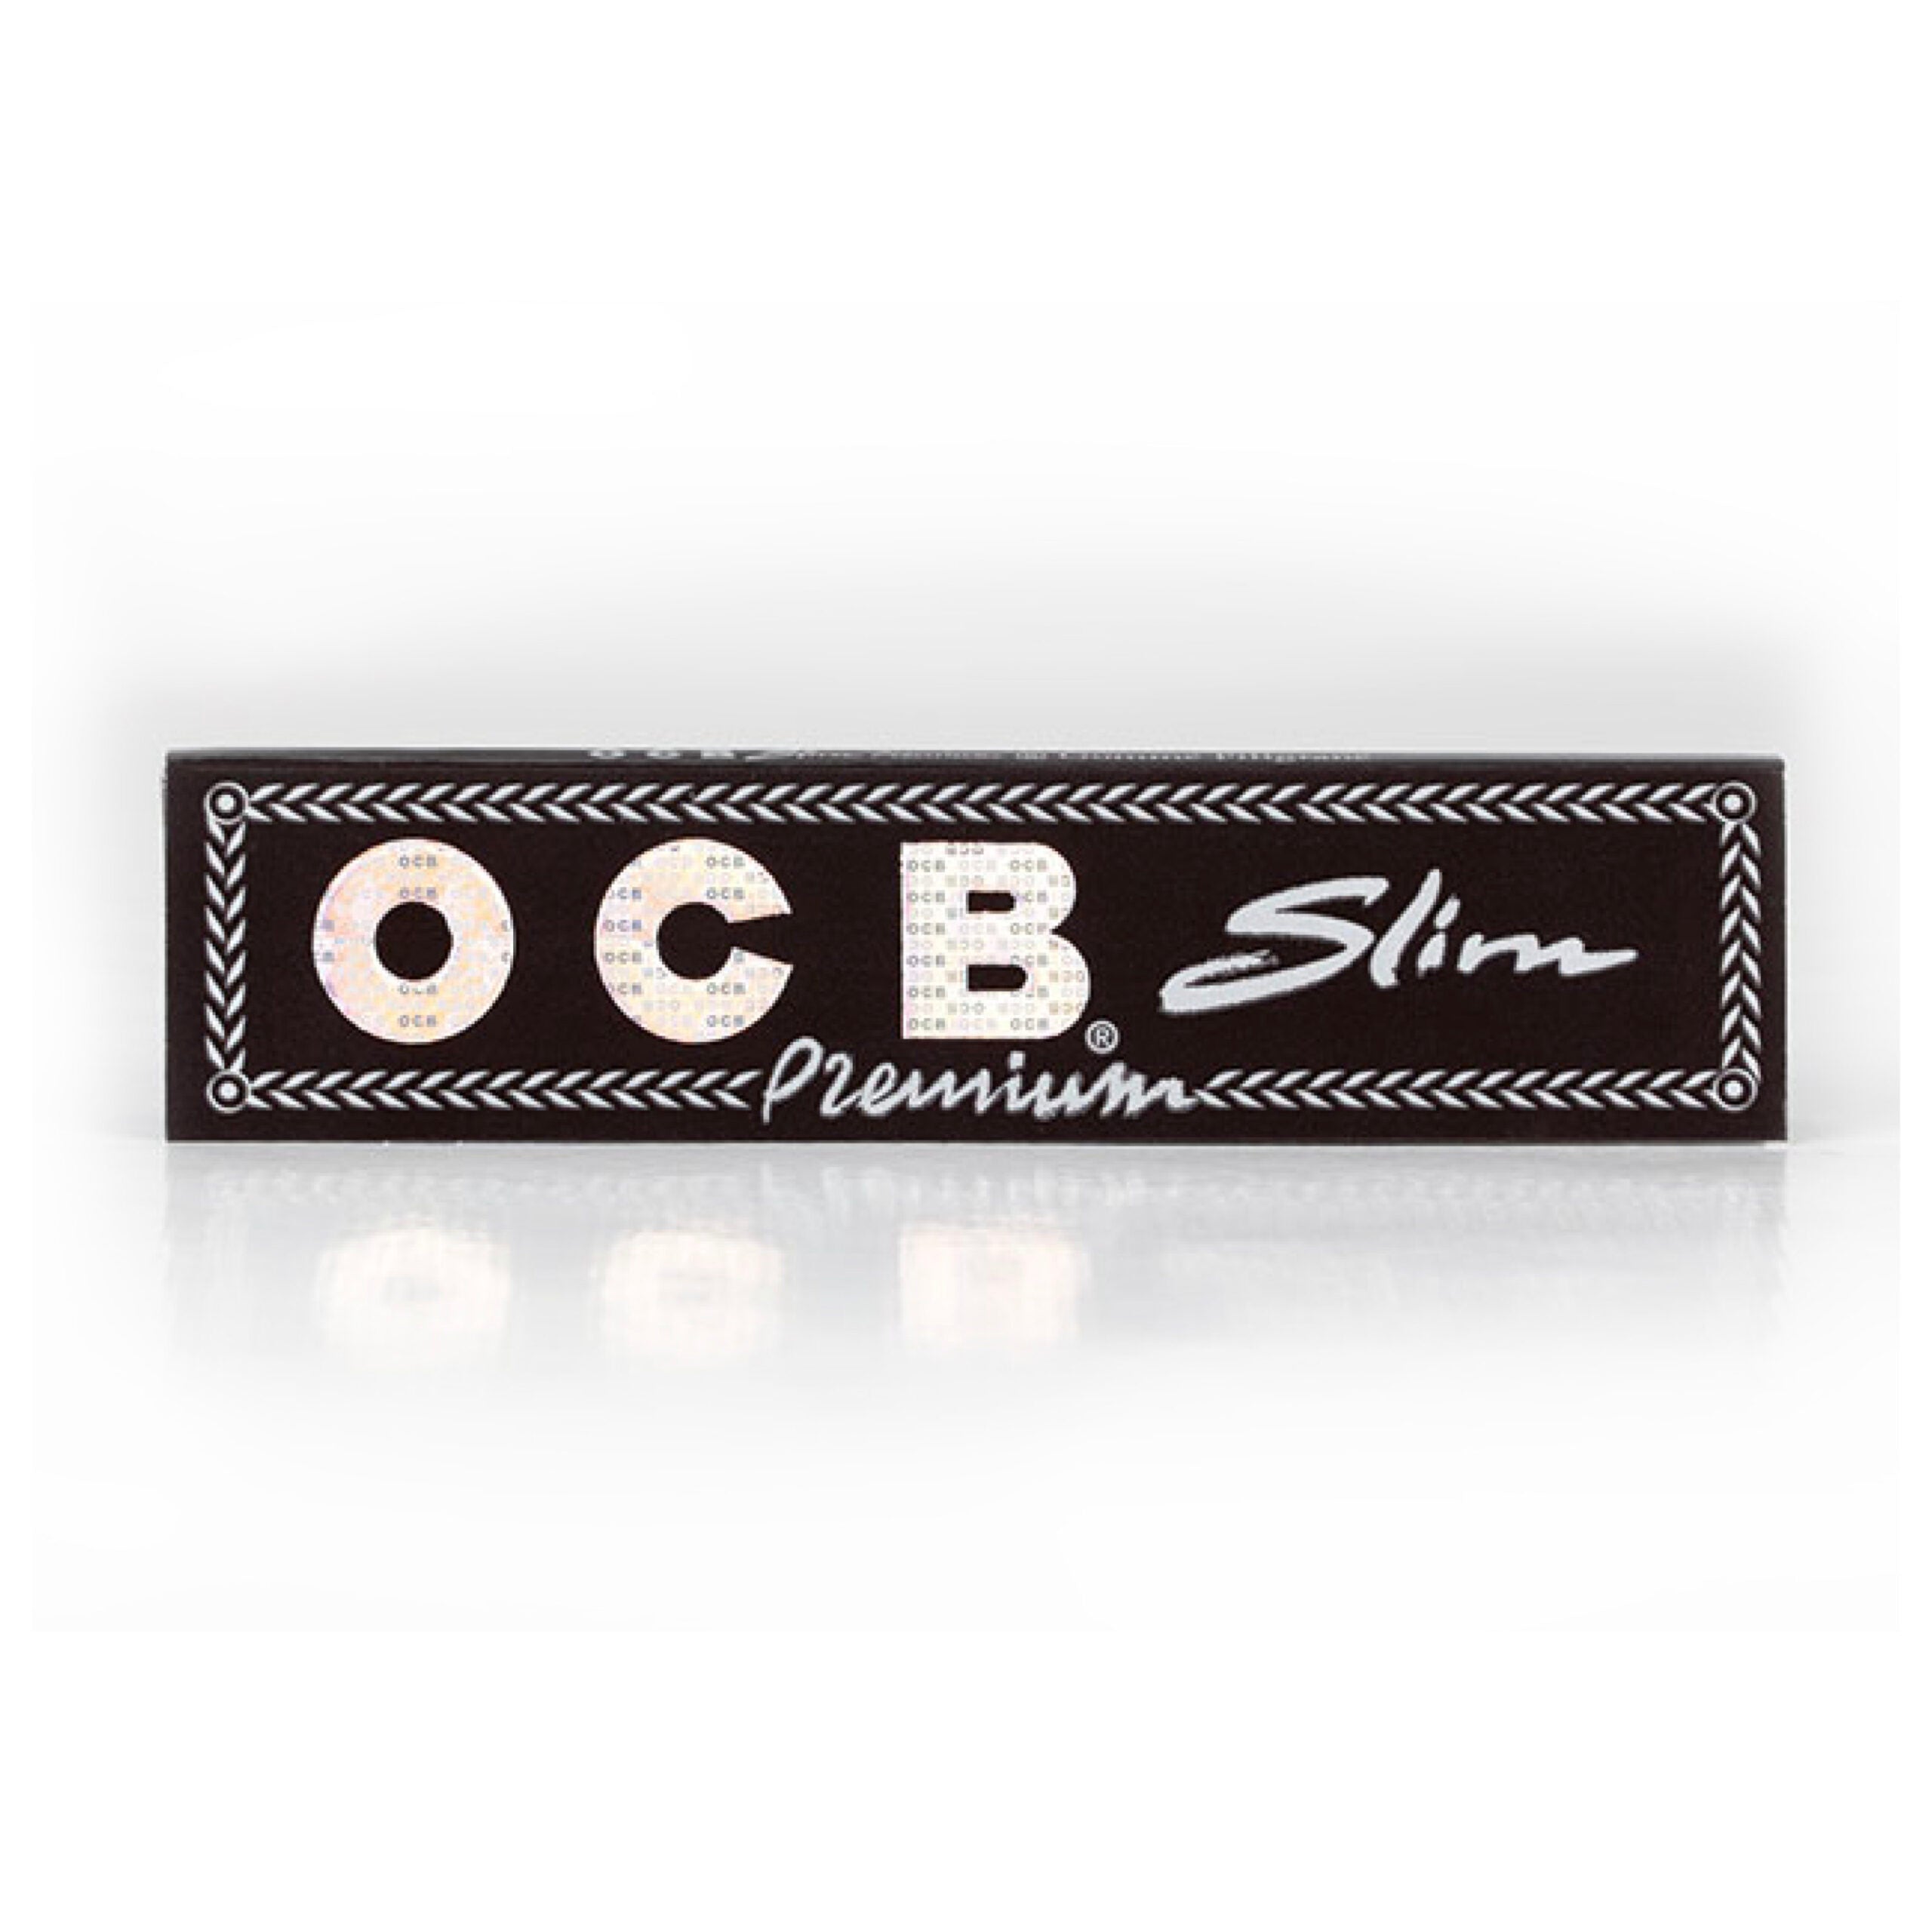 OCB Premium No.1 Regular Cigarette papers